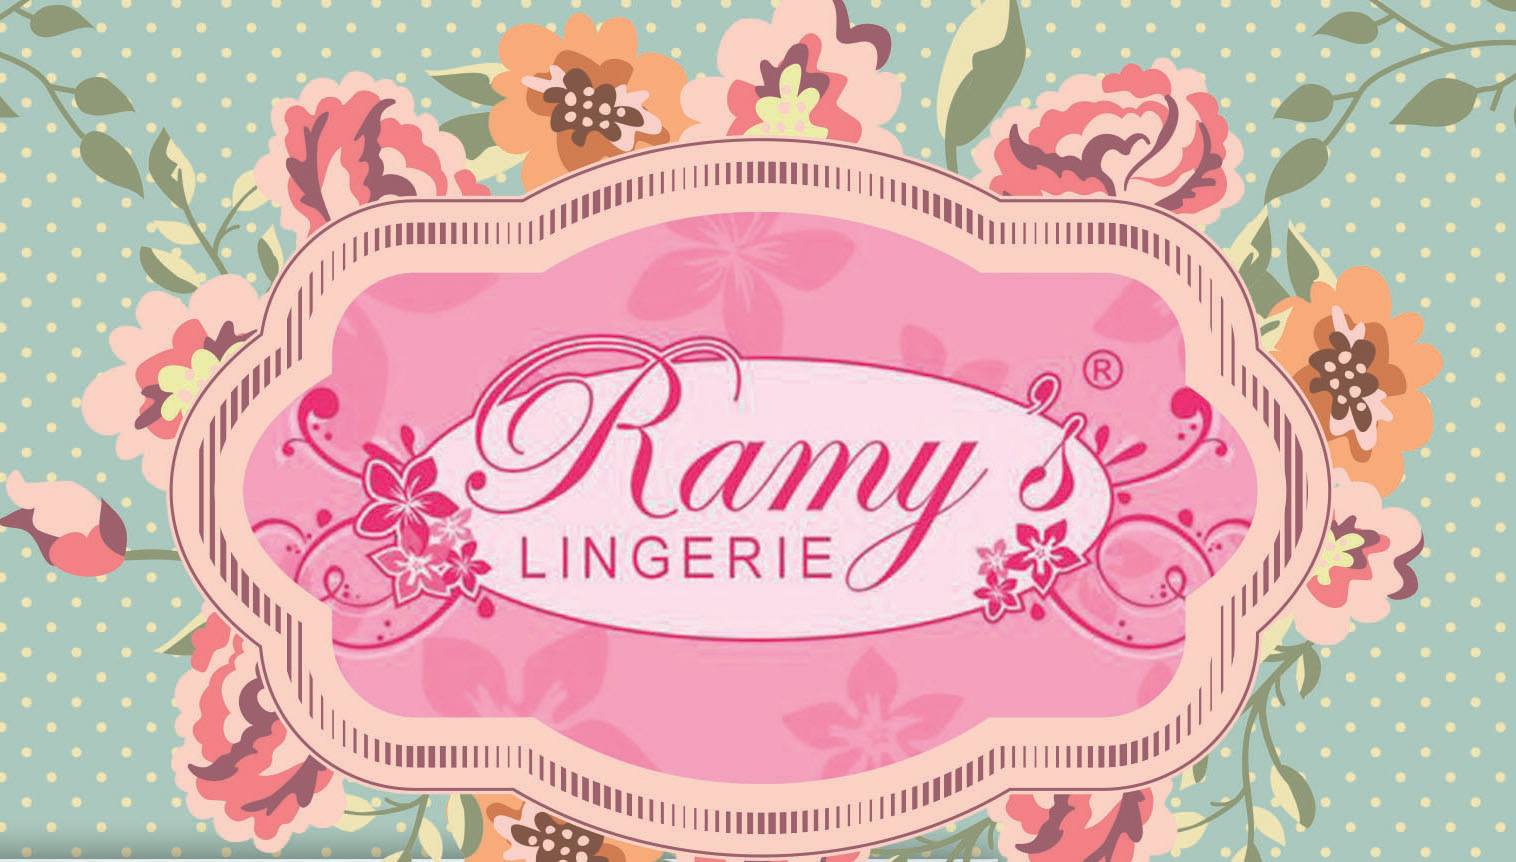 Ramy’s Lingerie | Pagamentos à vista garantem 10% de desconto para os associados